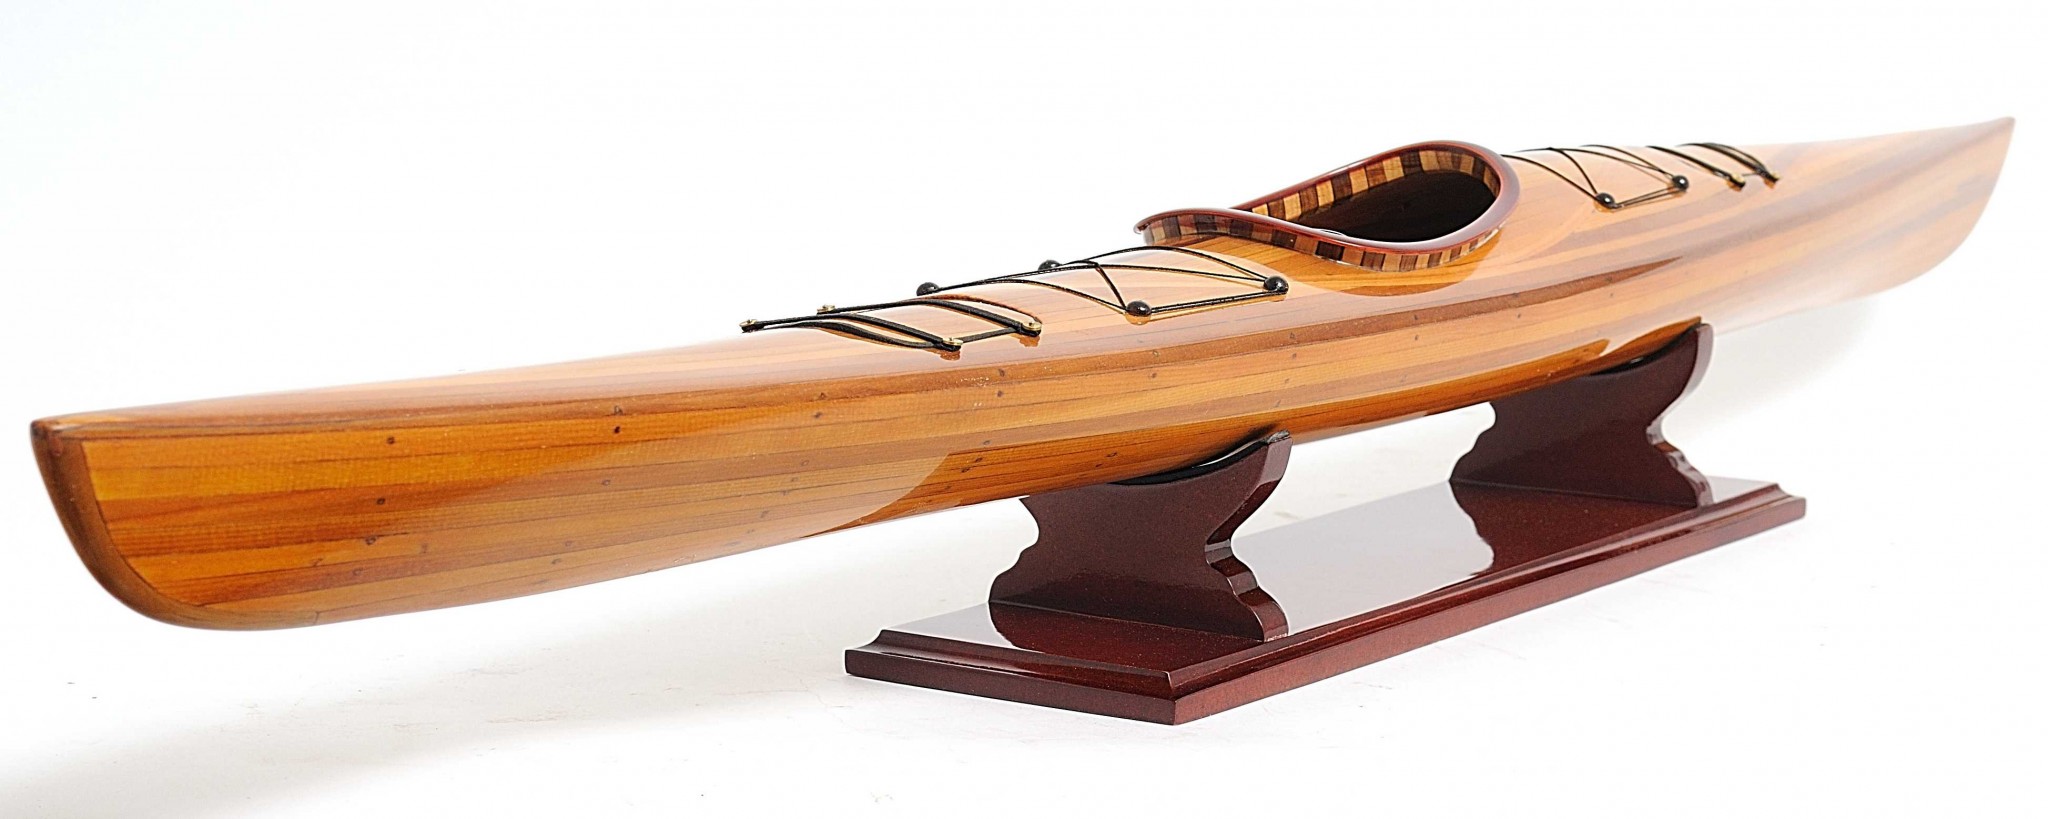 Rich Cedar Kayak Model Sculpture